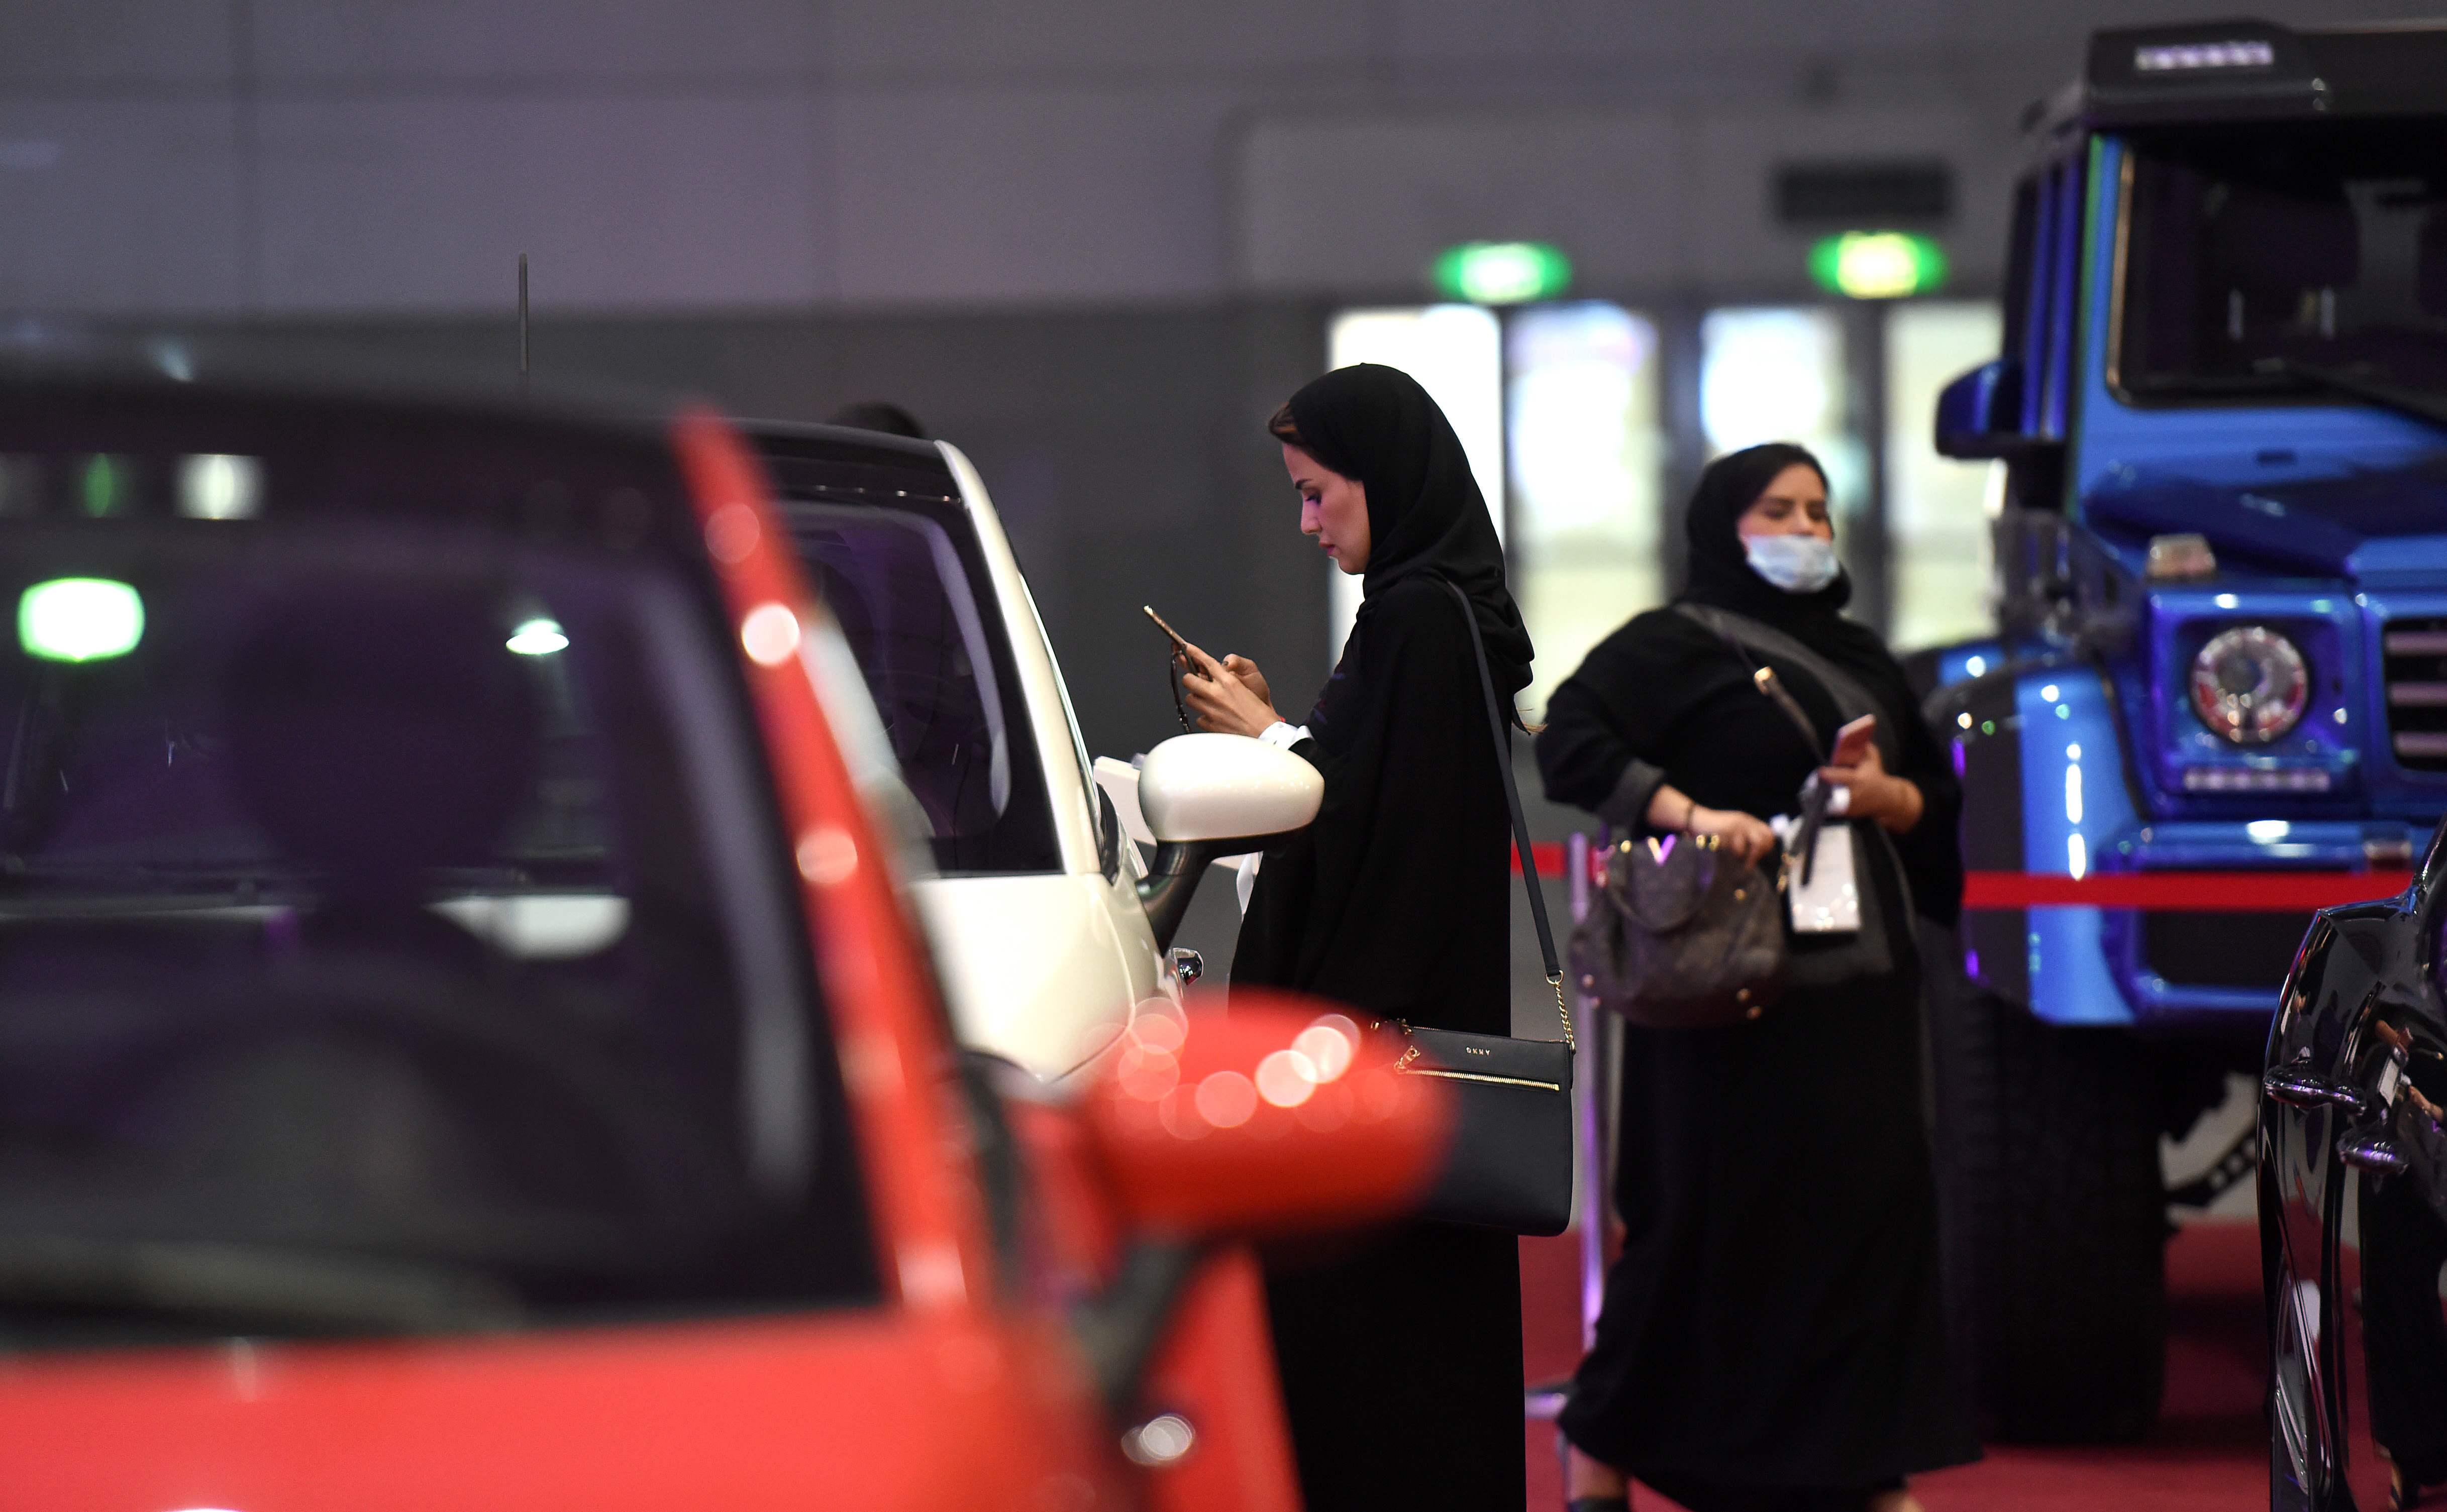 سعوديات داخل معرض بيع سيارات فى الرياض